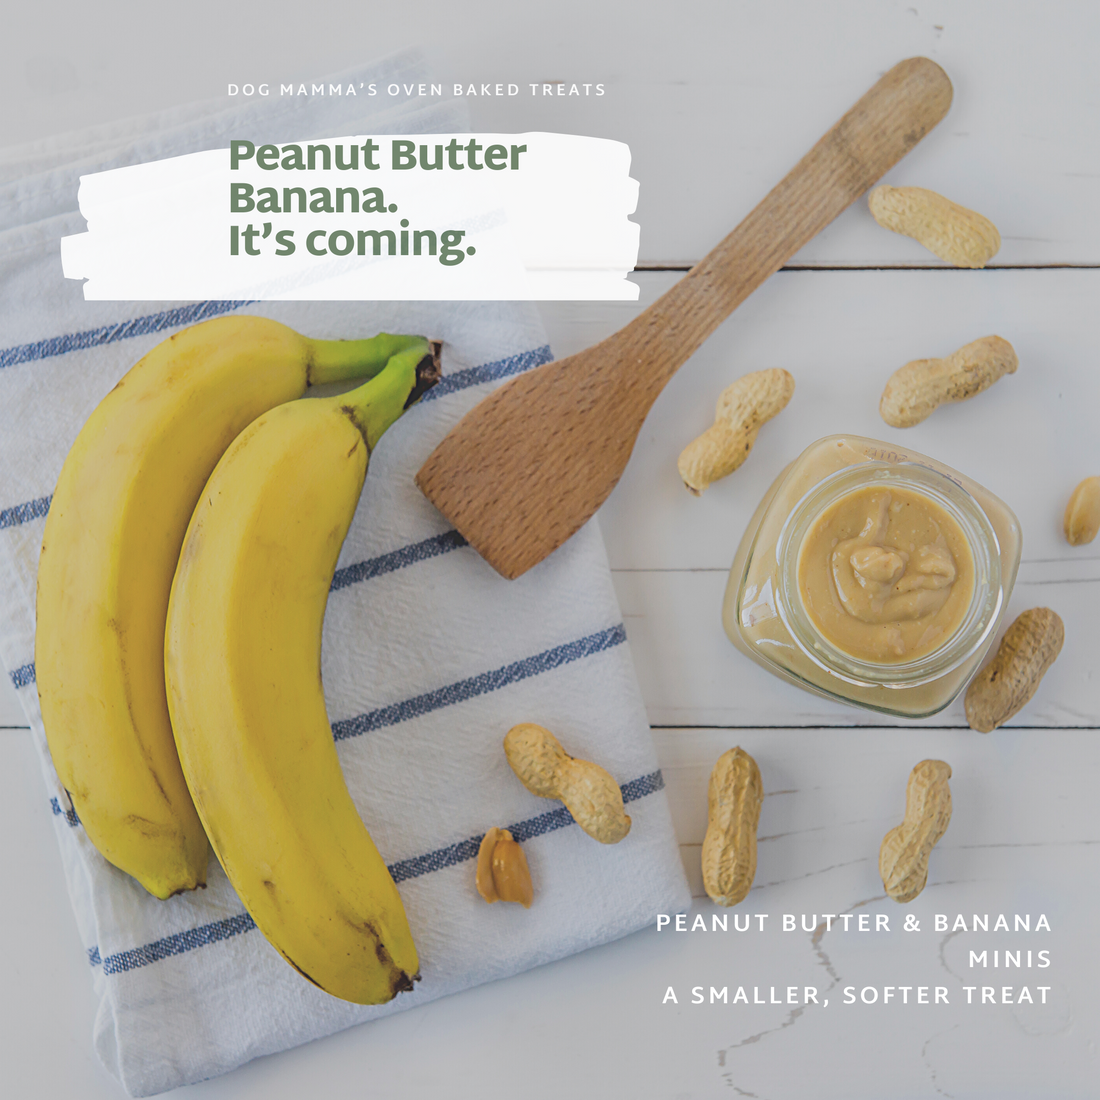 Peanut Butter Banana small treats are coming soon!